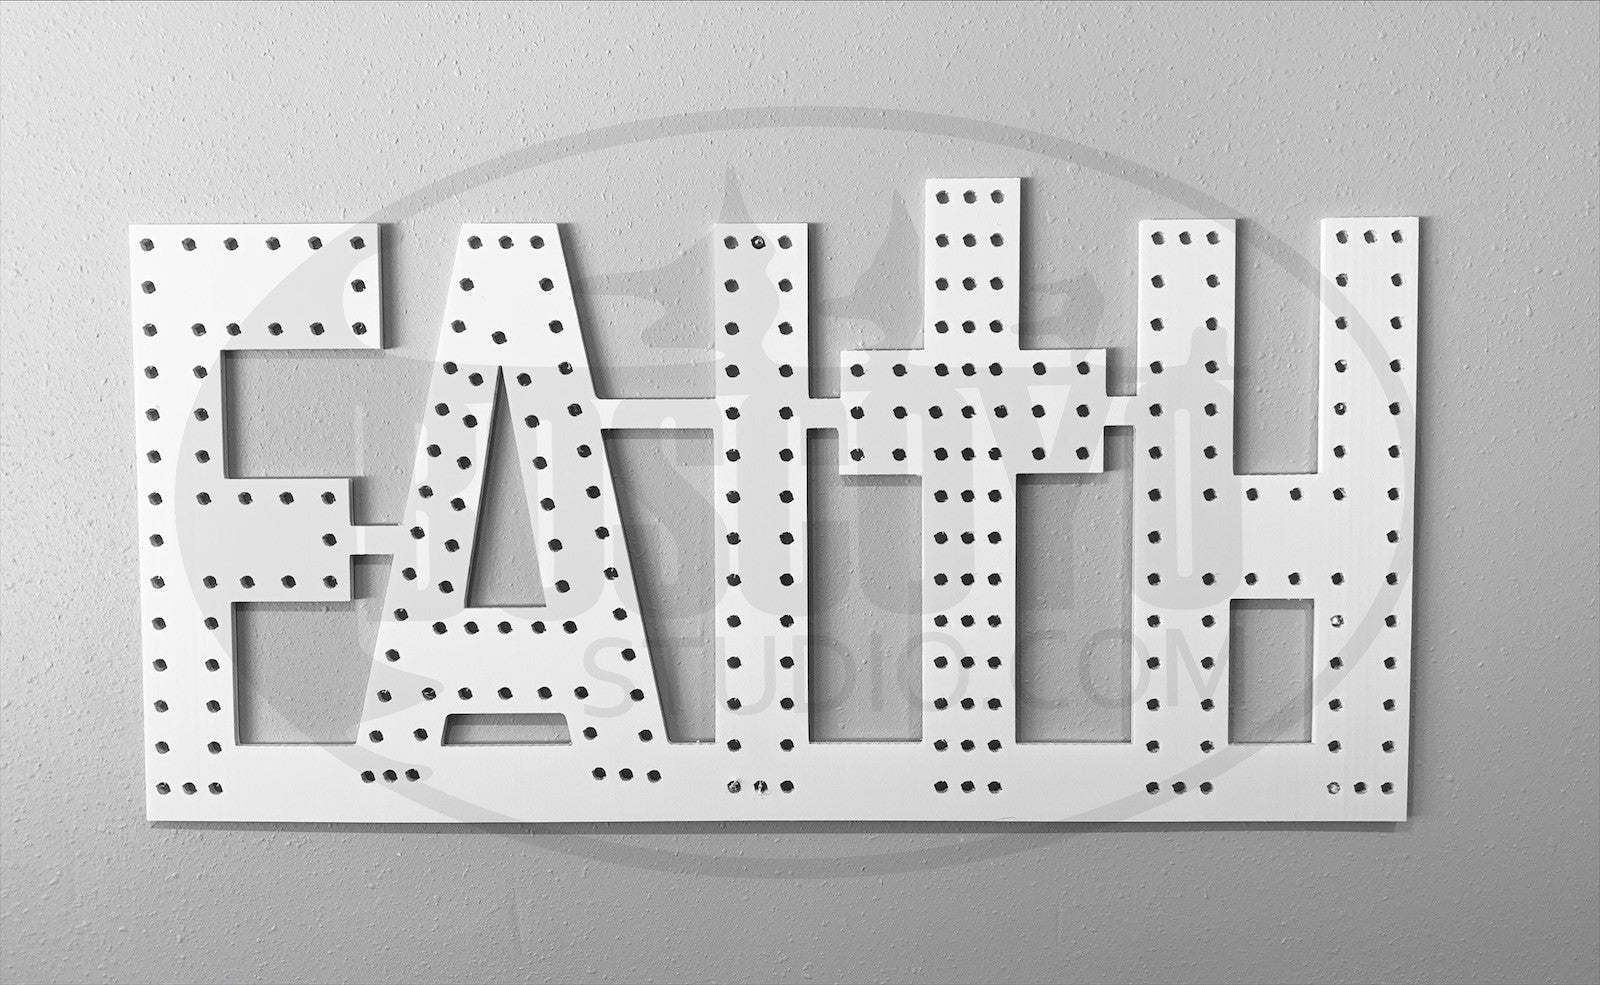 Faith Sign